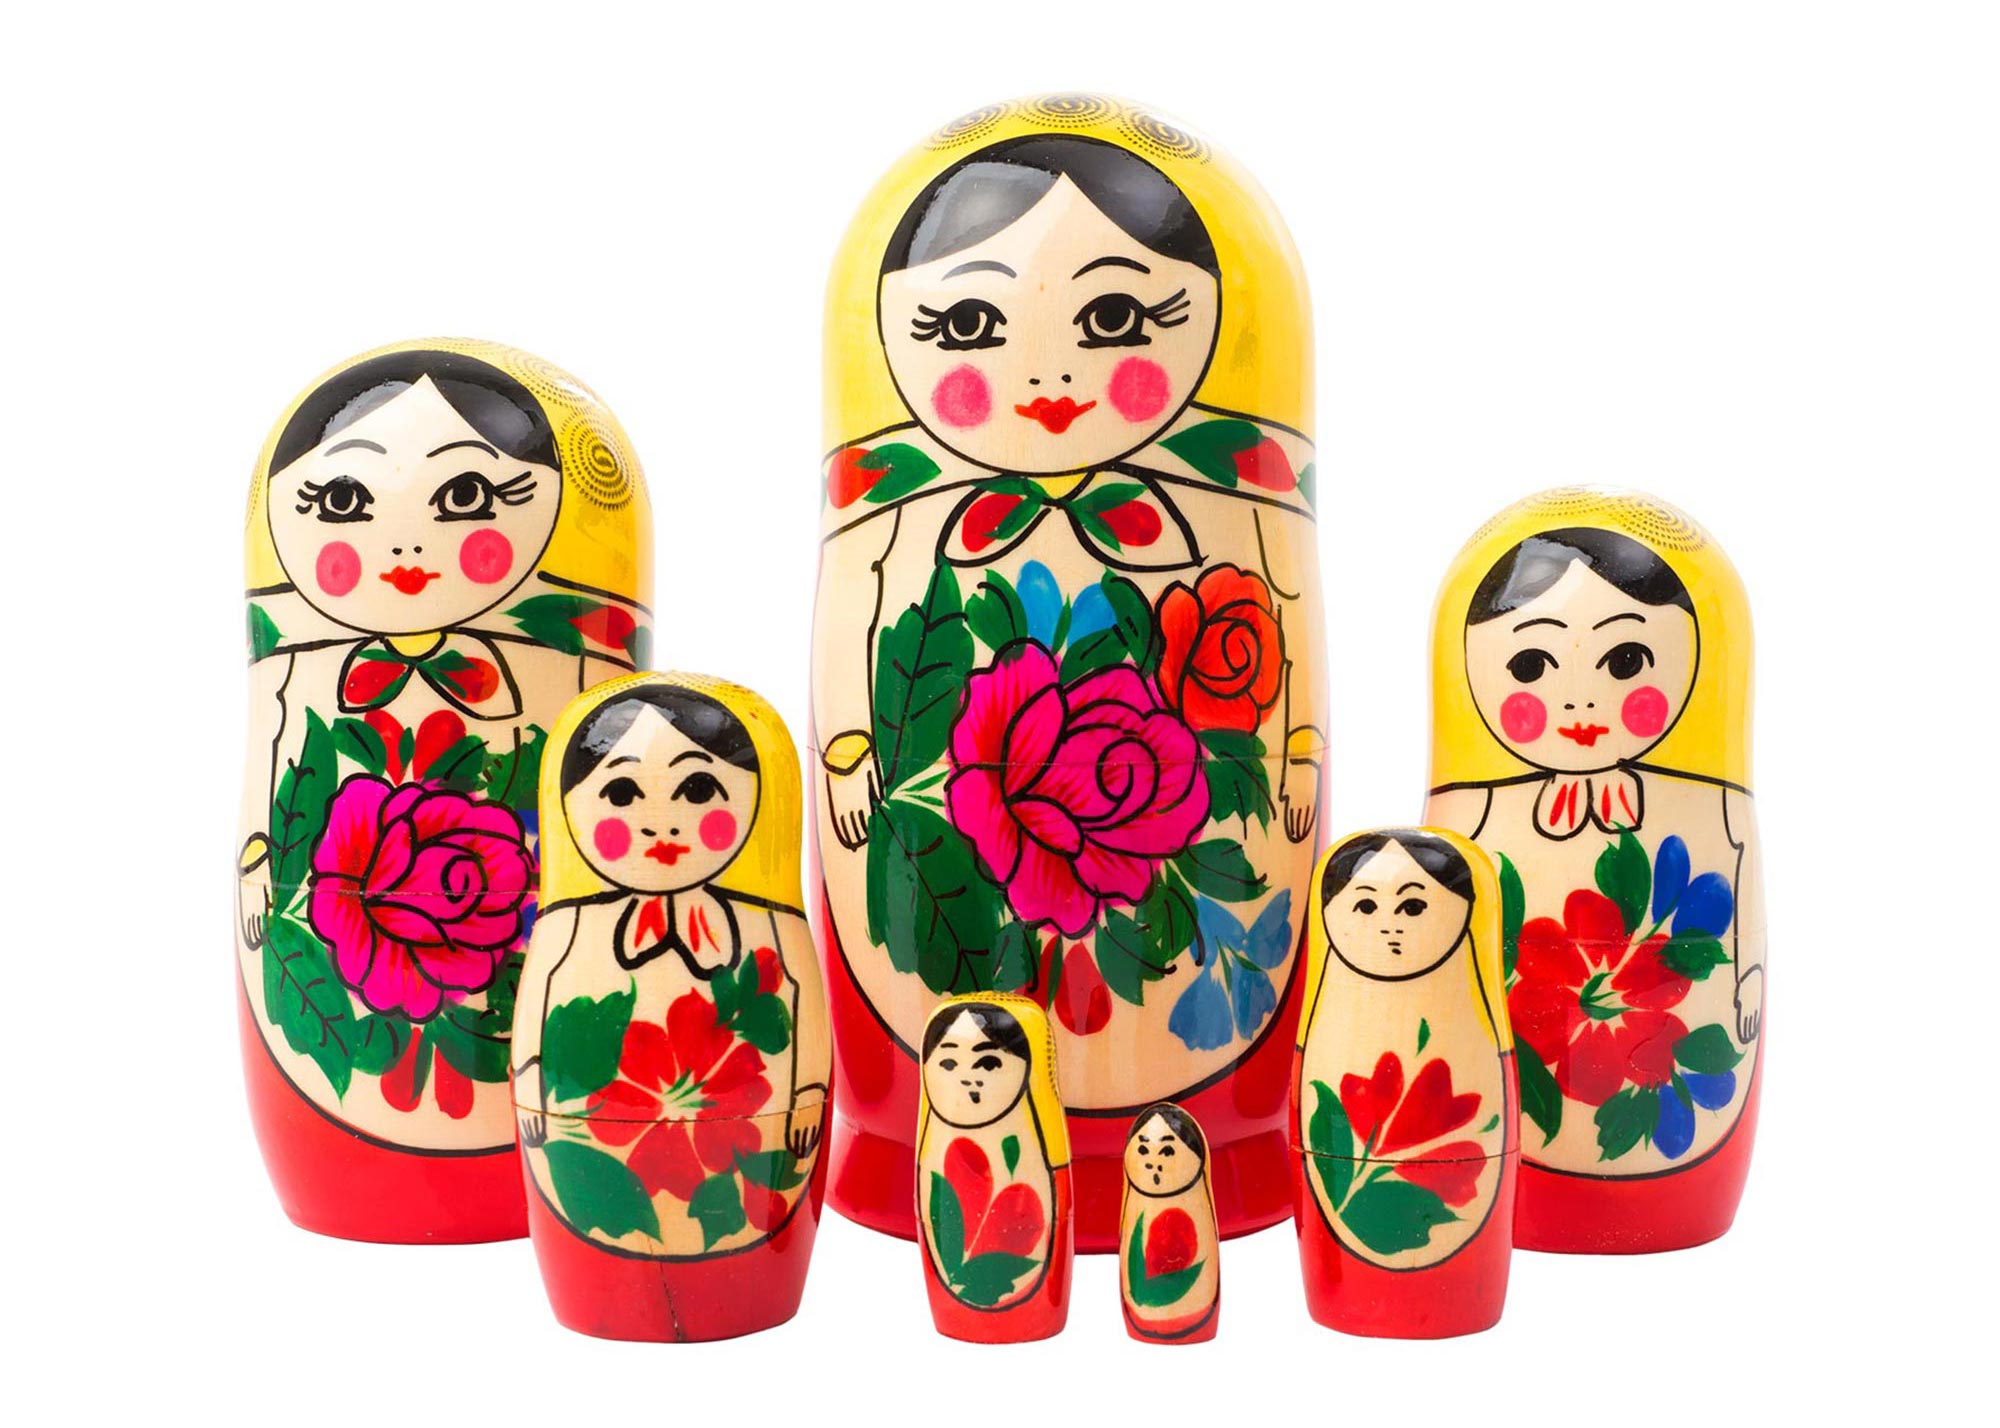 h=12" #8-3 Big Russian Semenov Nesting dolls Red Matryoshka set 15 pcs. 